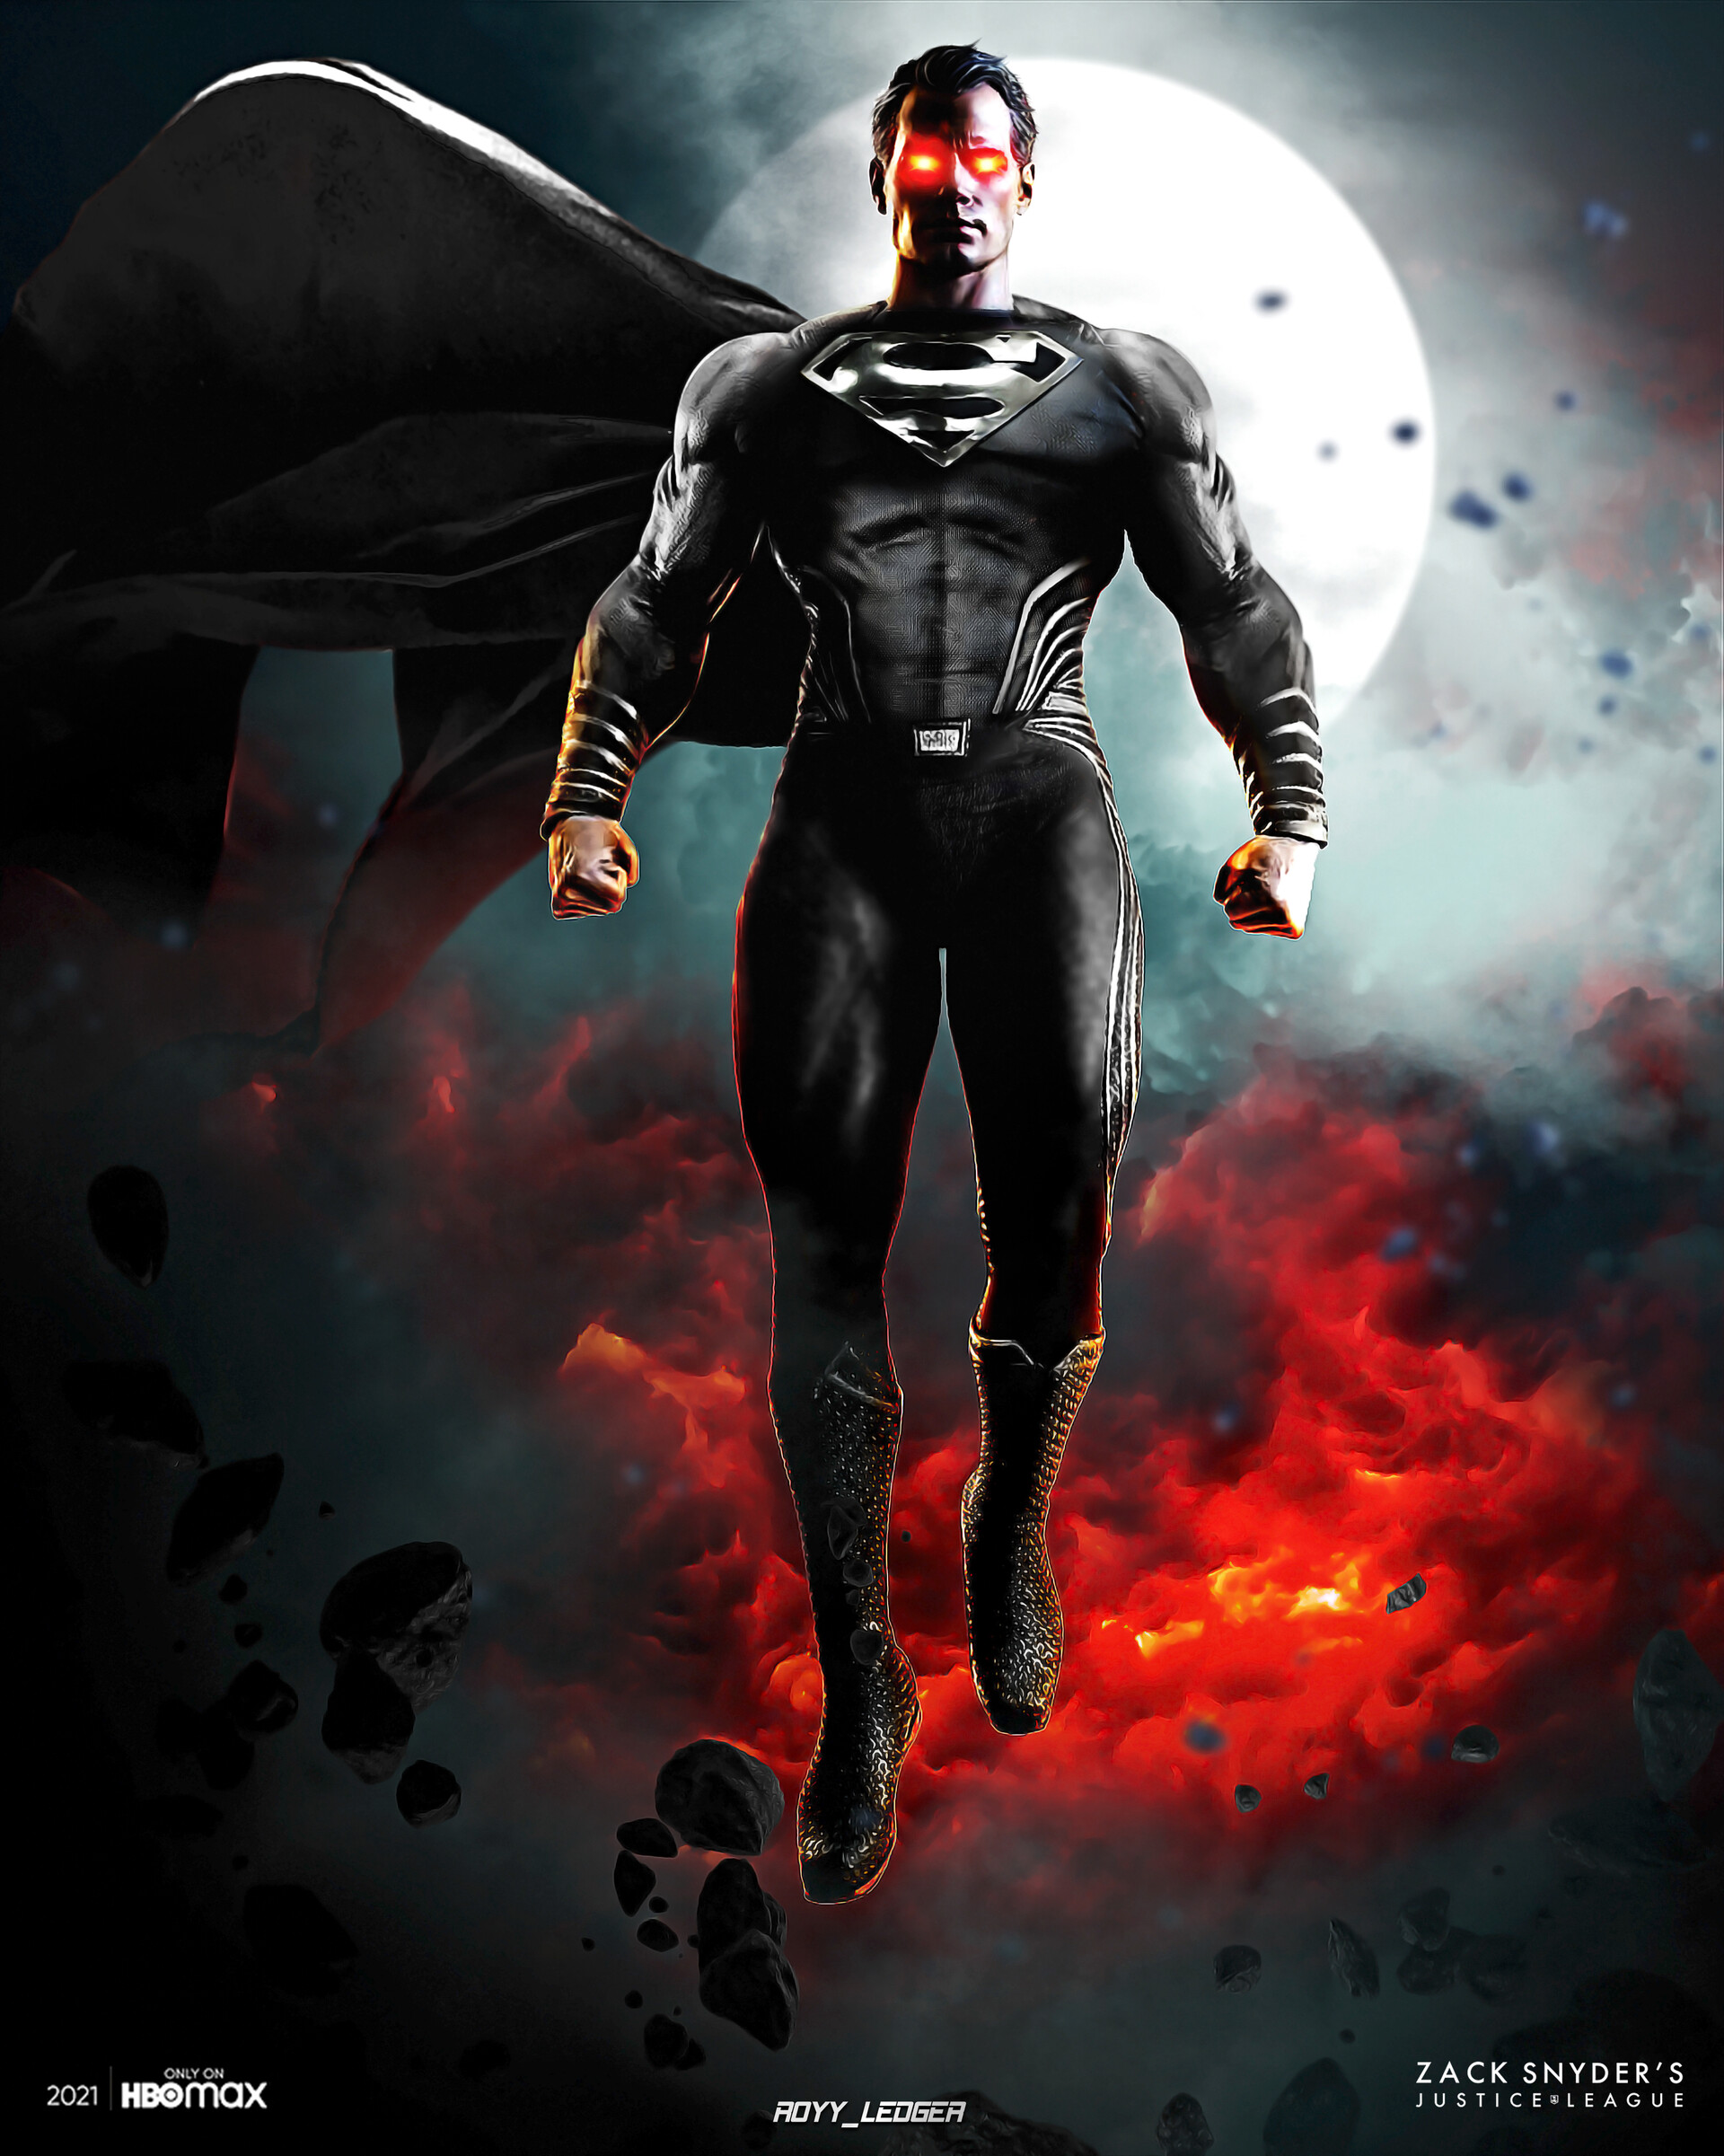 Royy _Ledger - Zack Snyder's Justice League : Black Suit Superman